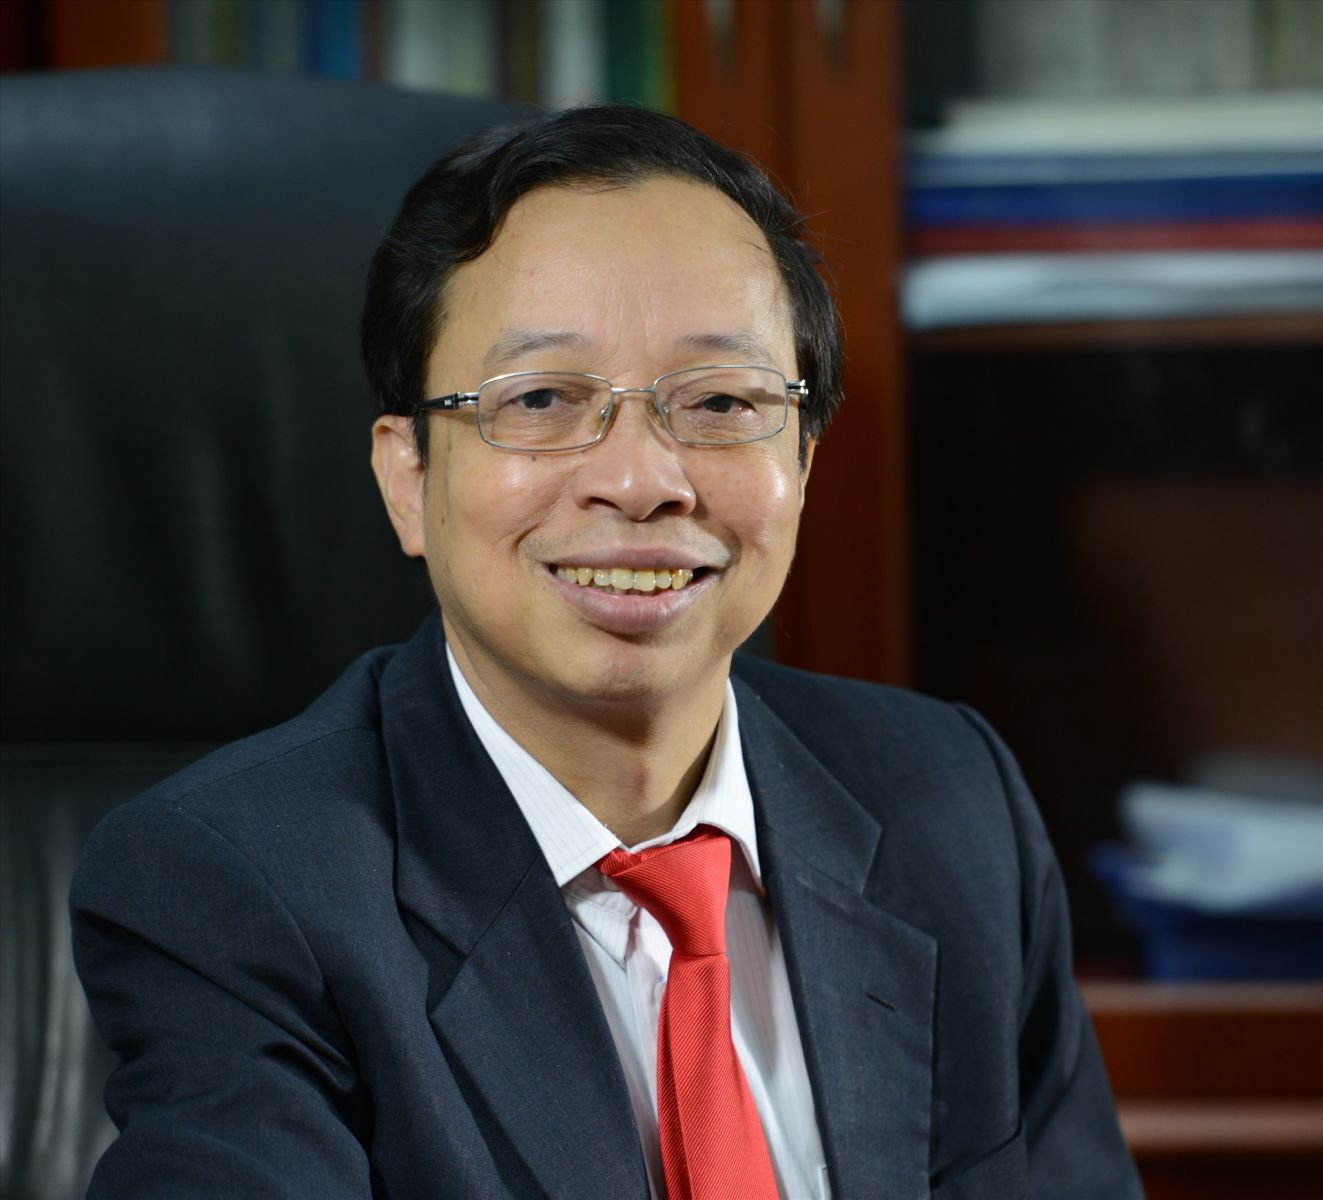 Ông Phạm Xuân Hòe: “Cần kiểm soát tín dụng theo cơ chế thị trường, thay vì sử dụng công cụ hành chính”- Ảnh 3.